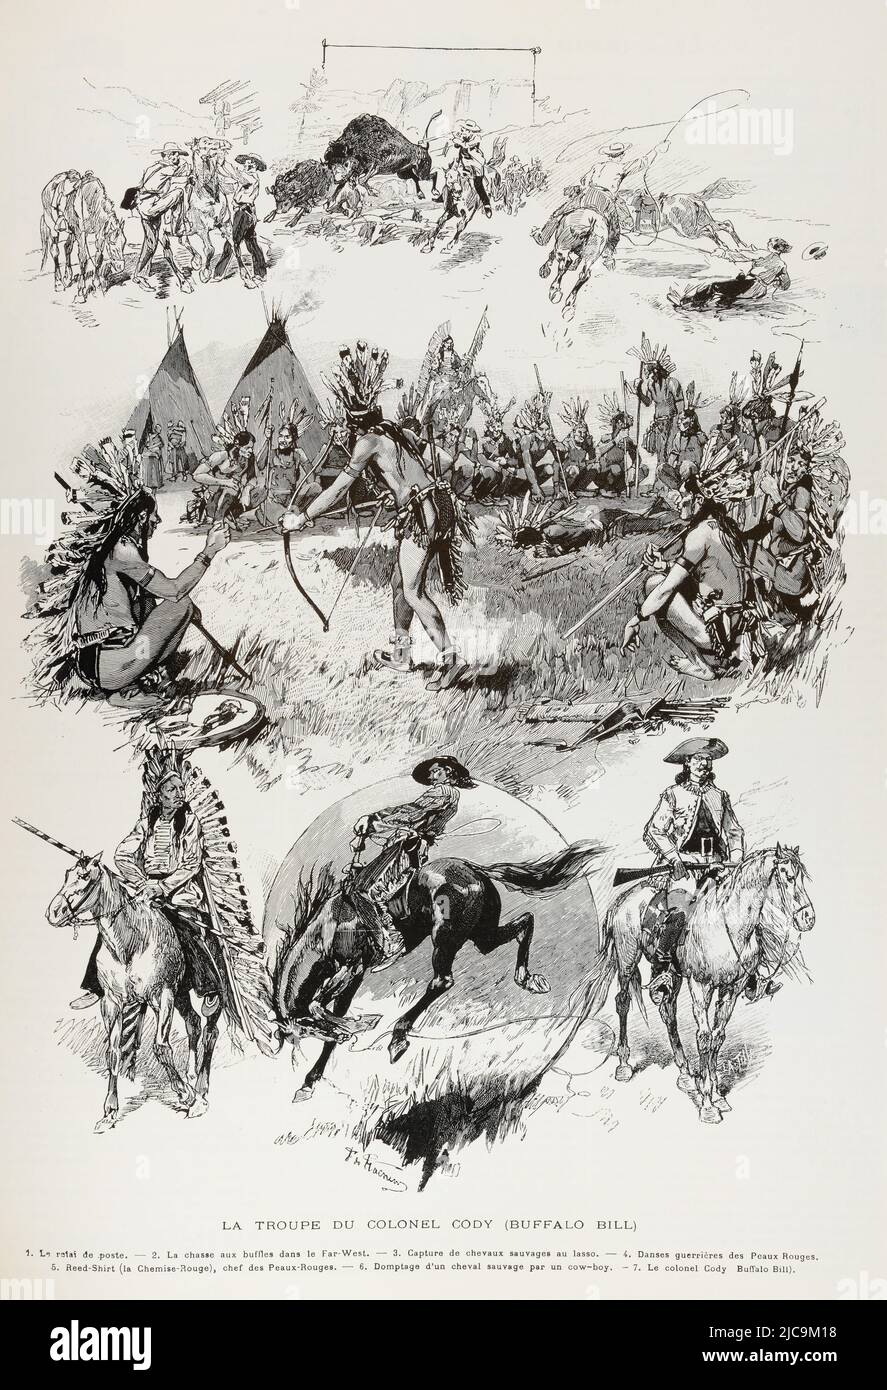 TRADUCTION EN ANGLAIS : ' LA TROUPE DU GÉNÉRAL CODY (BUFFALO BILL) 1.  Retard post. — 2. Chasse au Buffalo dans l'extrême-ouest. — 3. Prise de  chevaux sauvages par lasso. — 4.